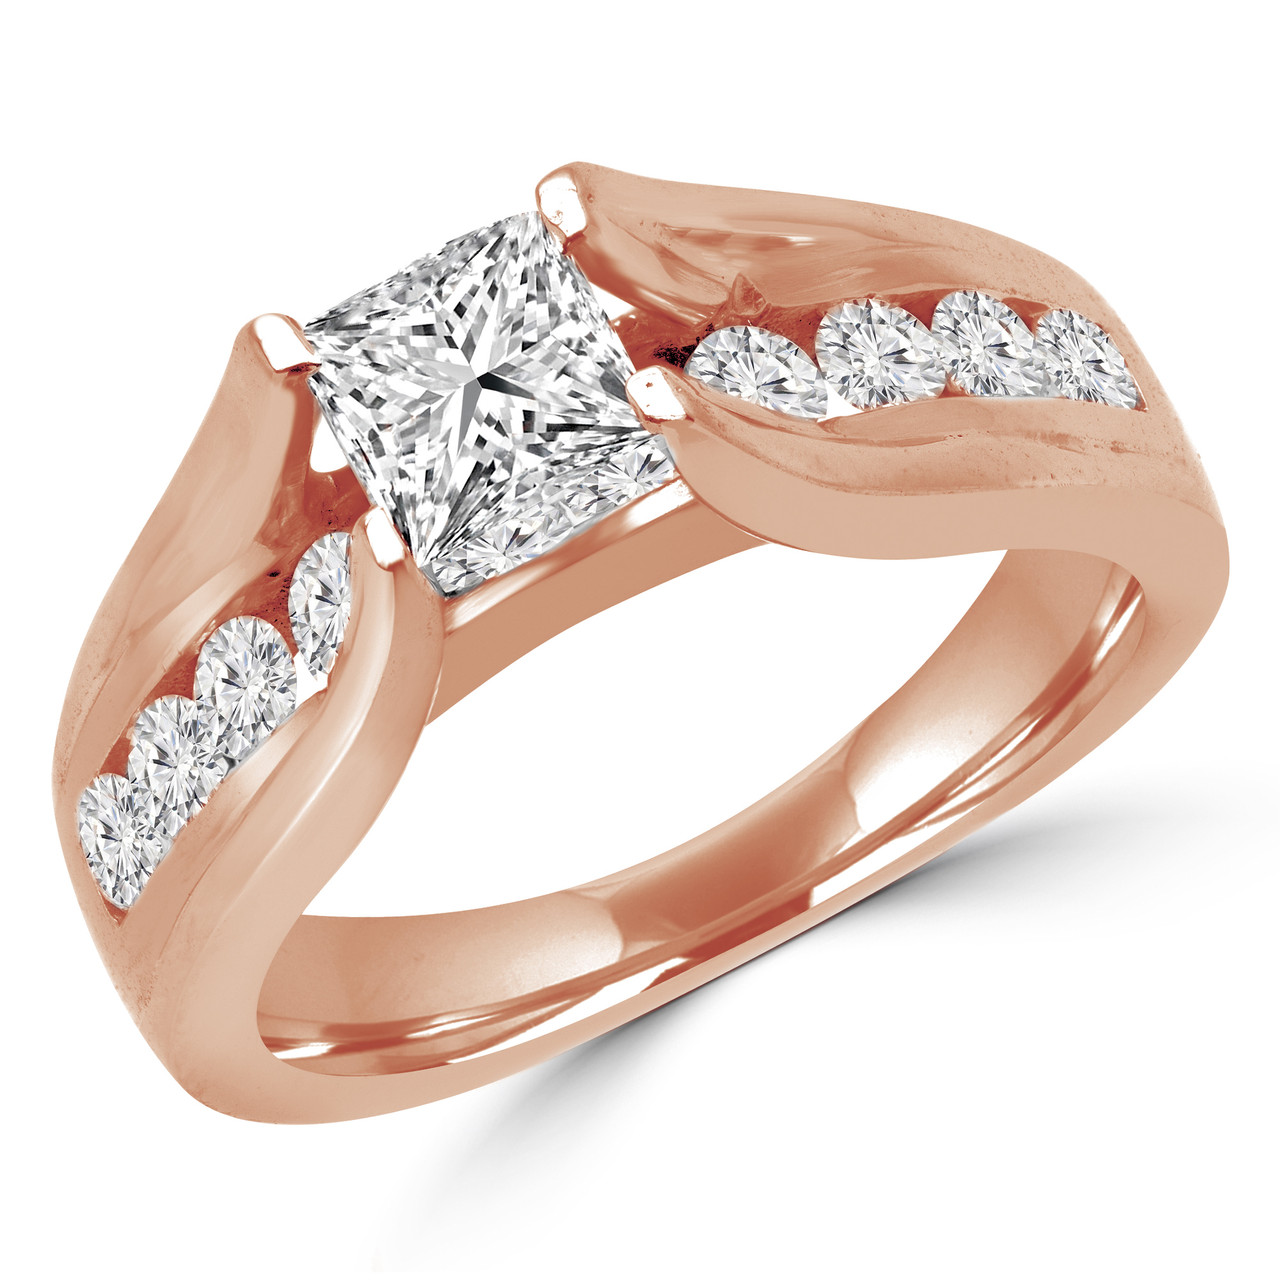 Floating Diamond Ring - Floating Diamond Engagement Ring - Do Amore